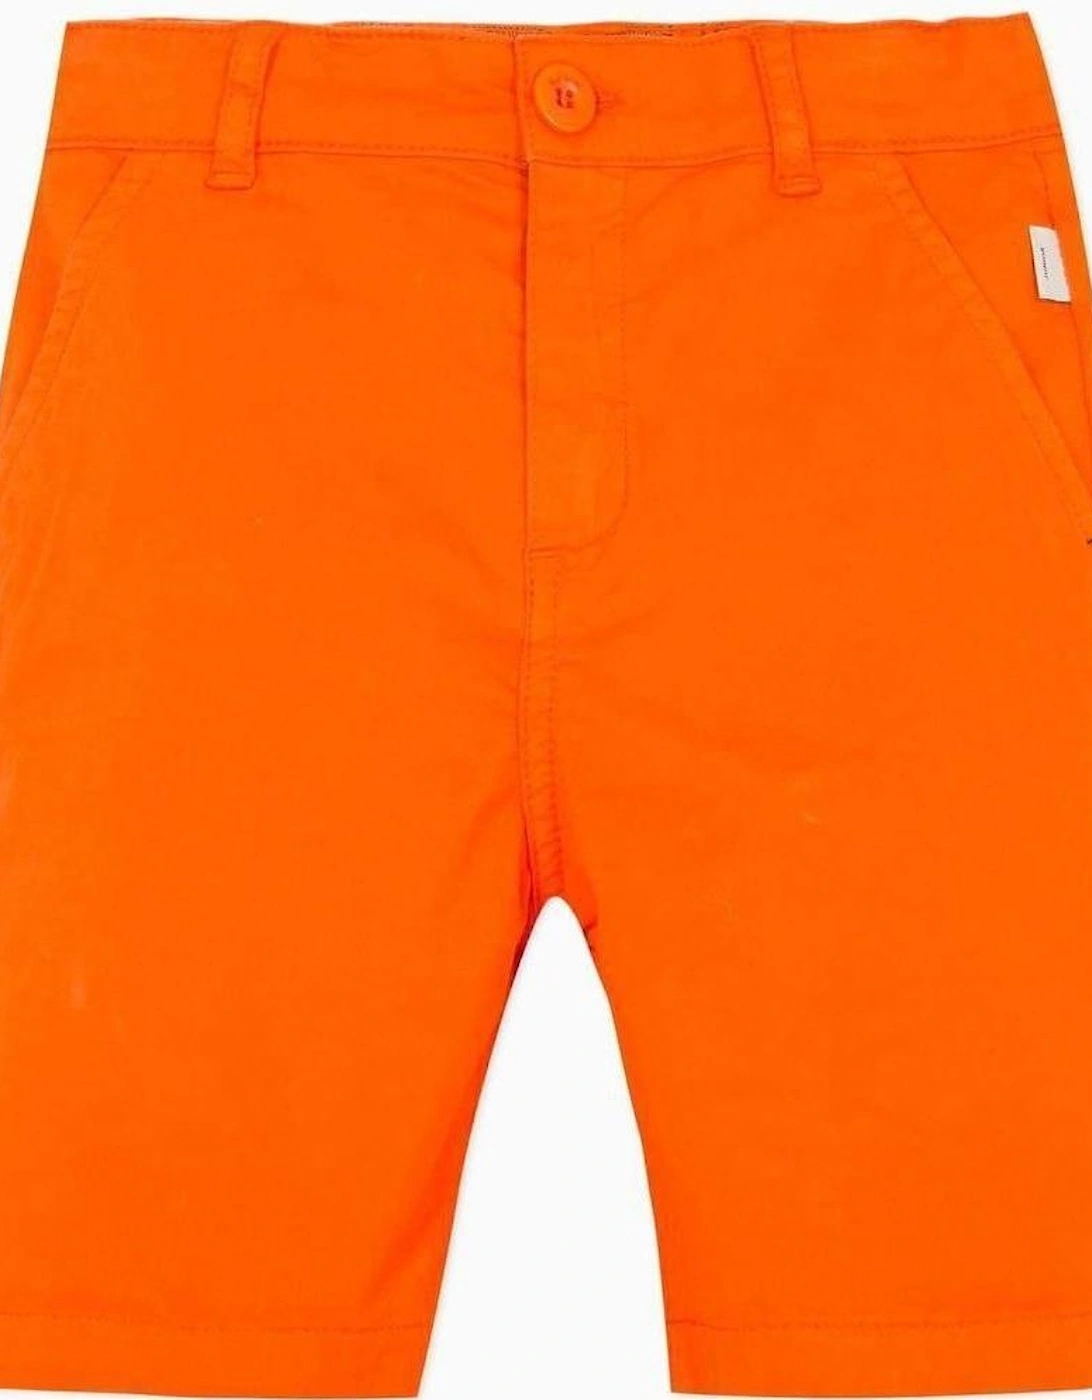 Boys Orange Shorts, 3 of 2